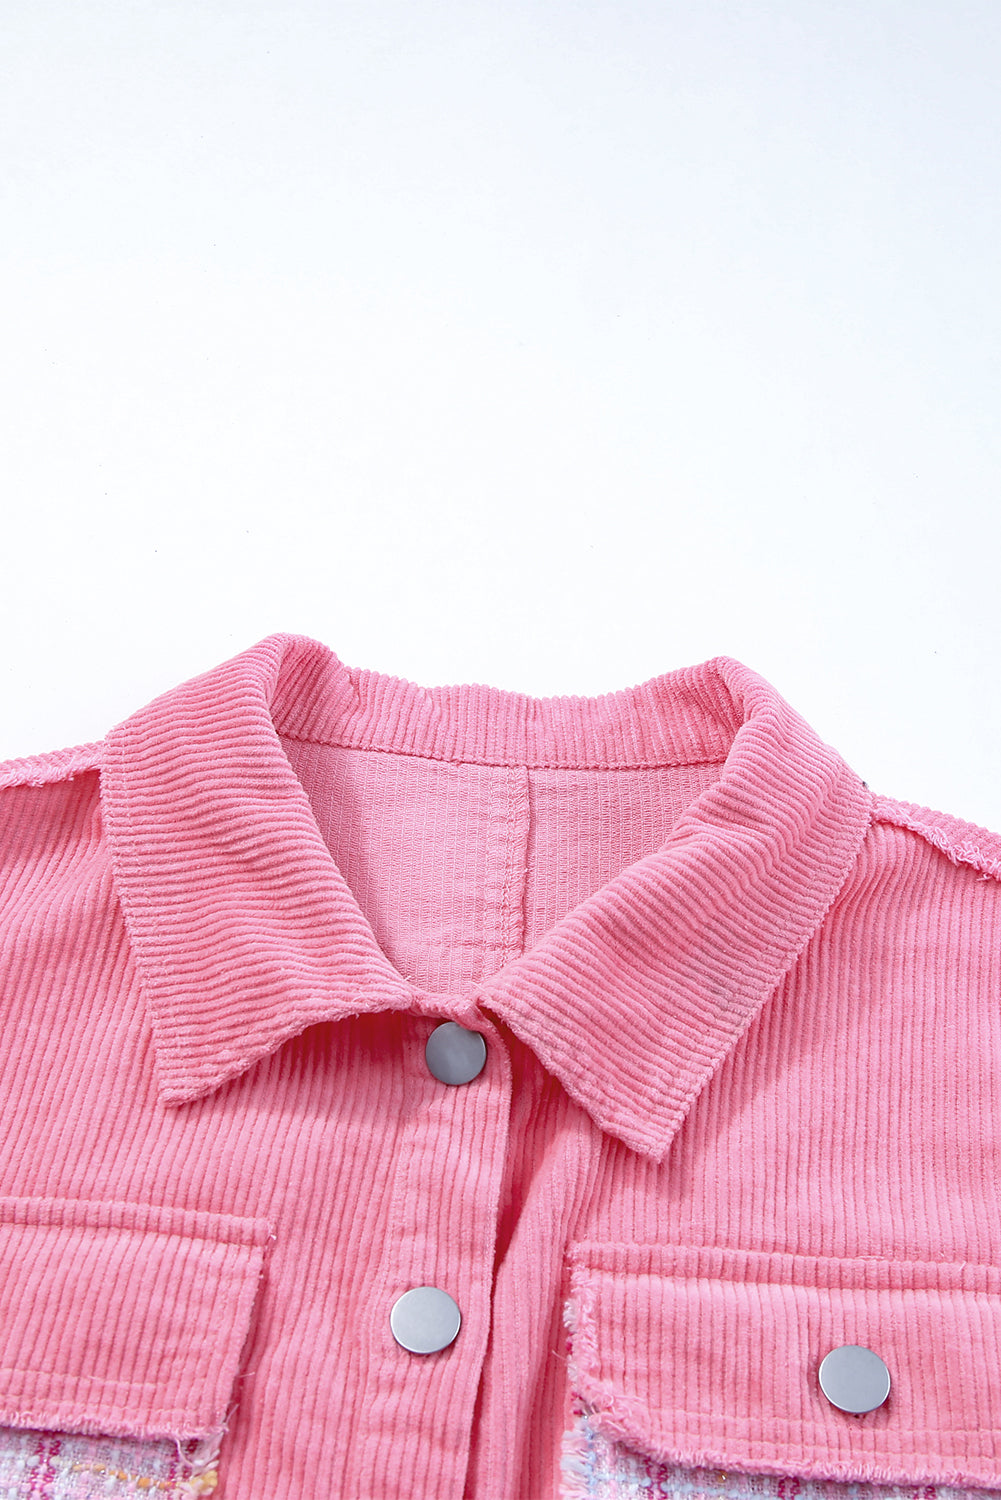 Rosefarbene, ausgefranste Tweed-Jacke mit Karo-Patchwork und Knöpfen